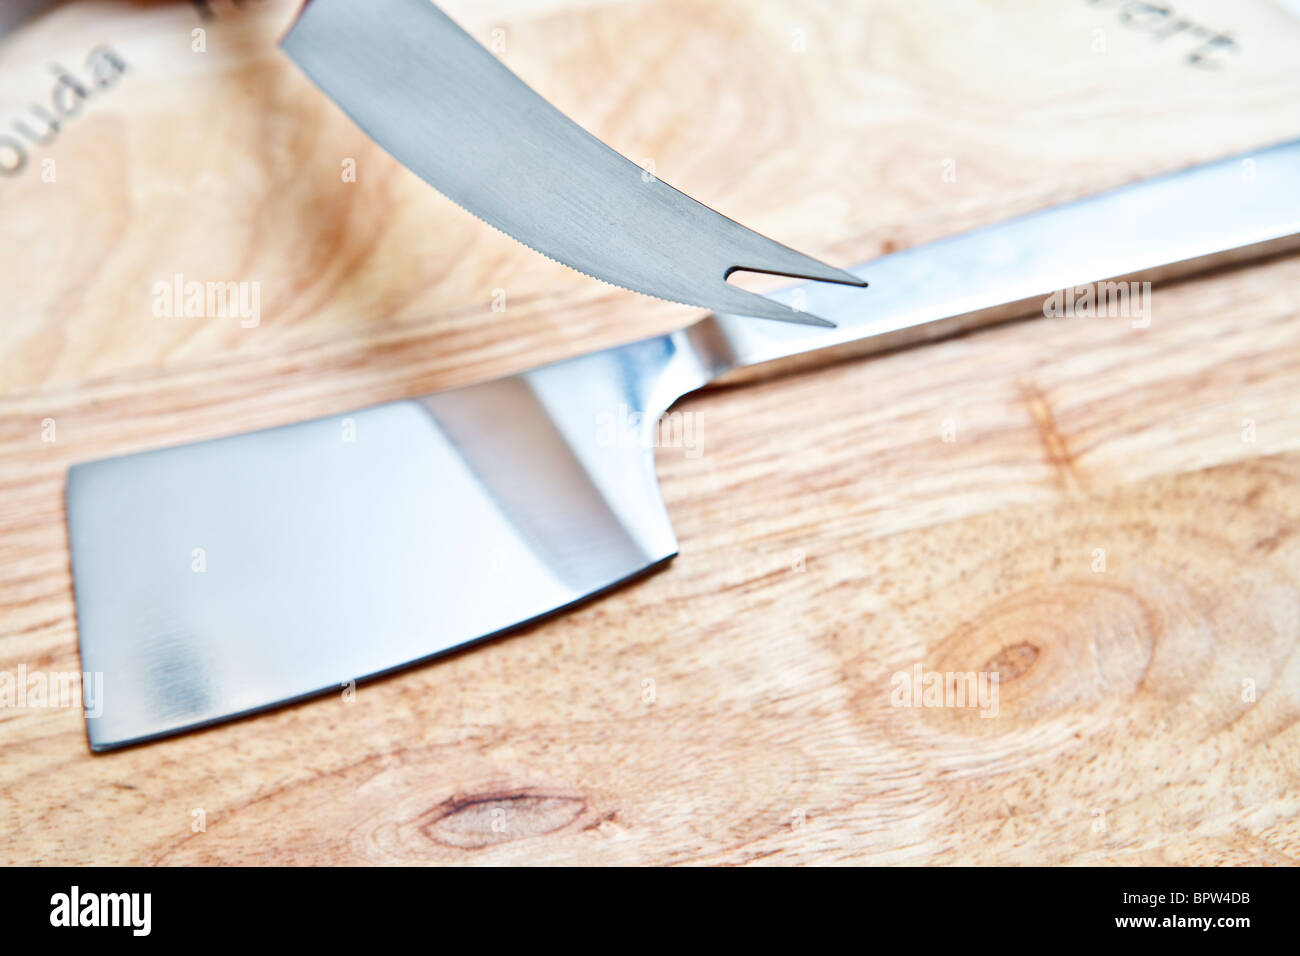 Acciaio inossidabile arnese da cucina sul tagliere di legno Foto Stock